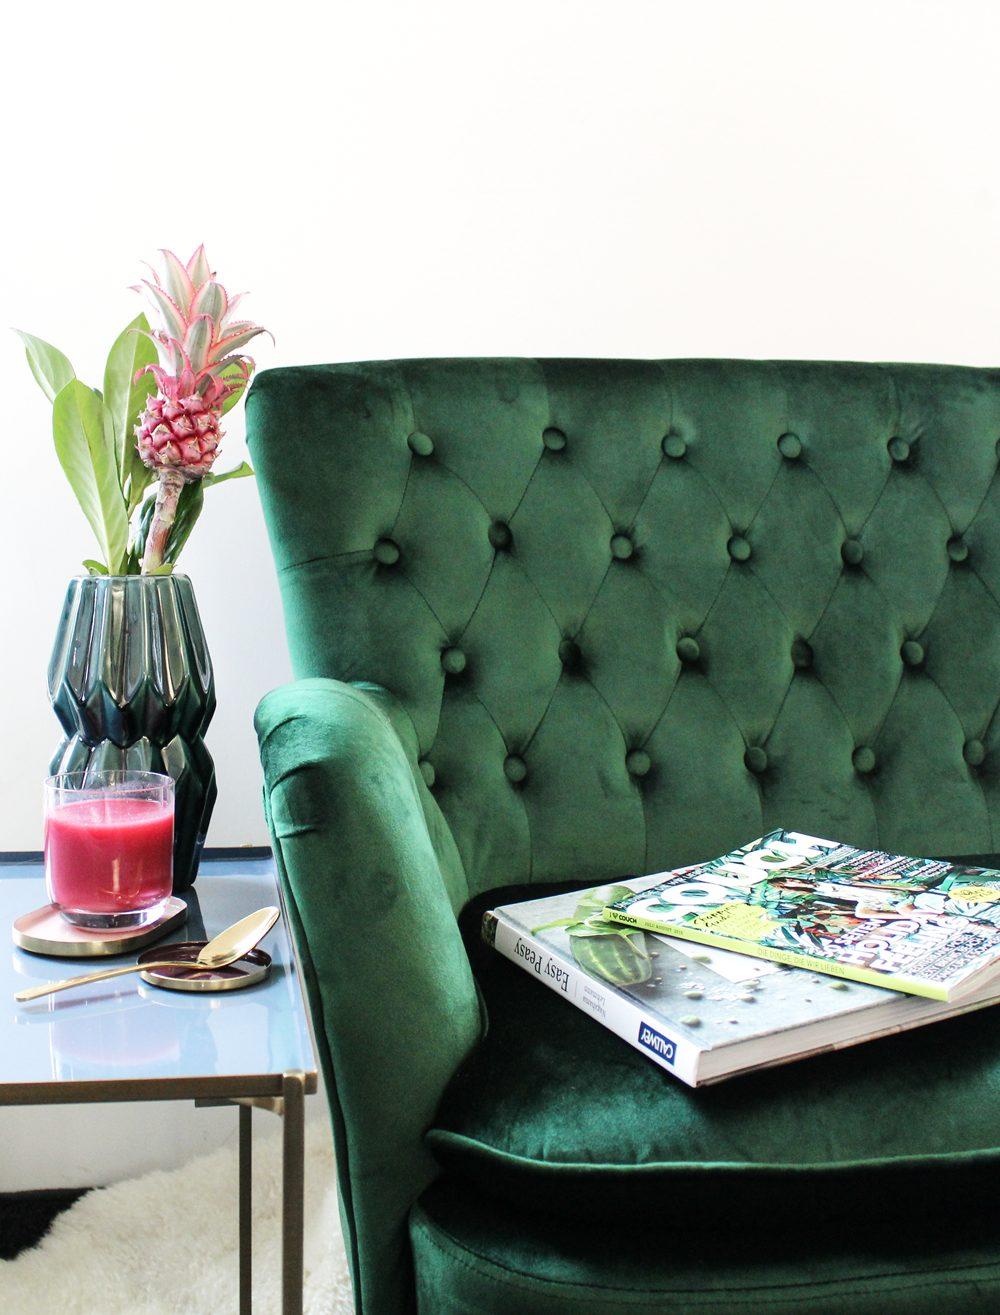 Unser schmuckes grünes #Samt #Sofa.💚
#couchliebt #interior #wohnzimmer #inspiration #blumen #cozy #einrichtung